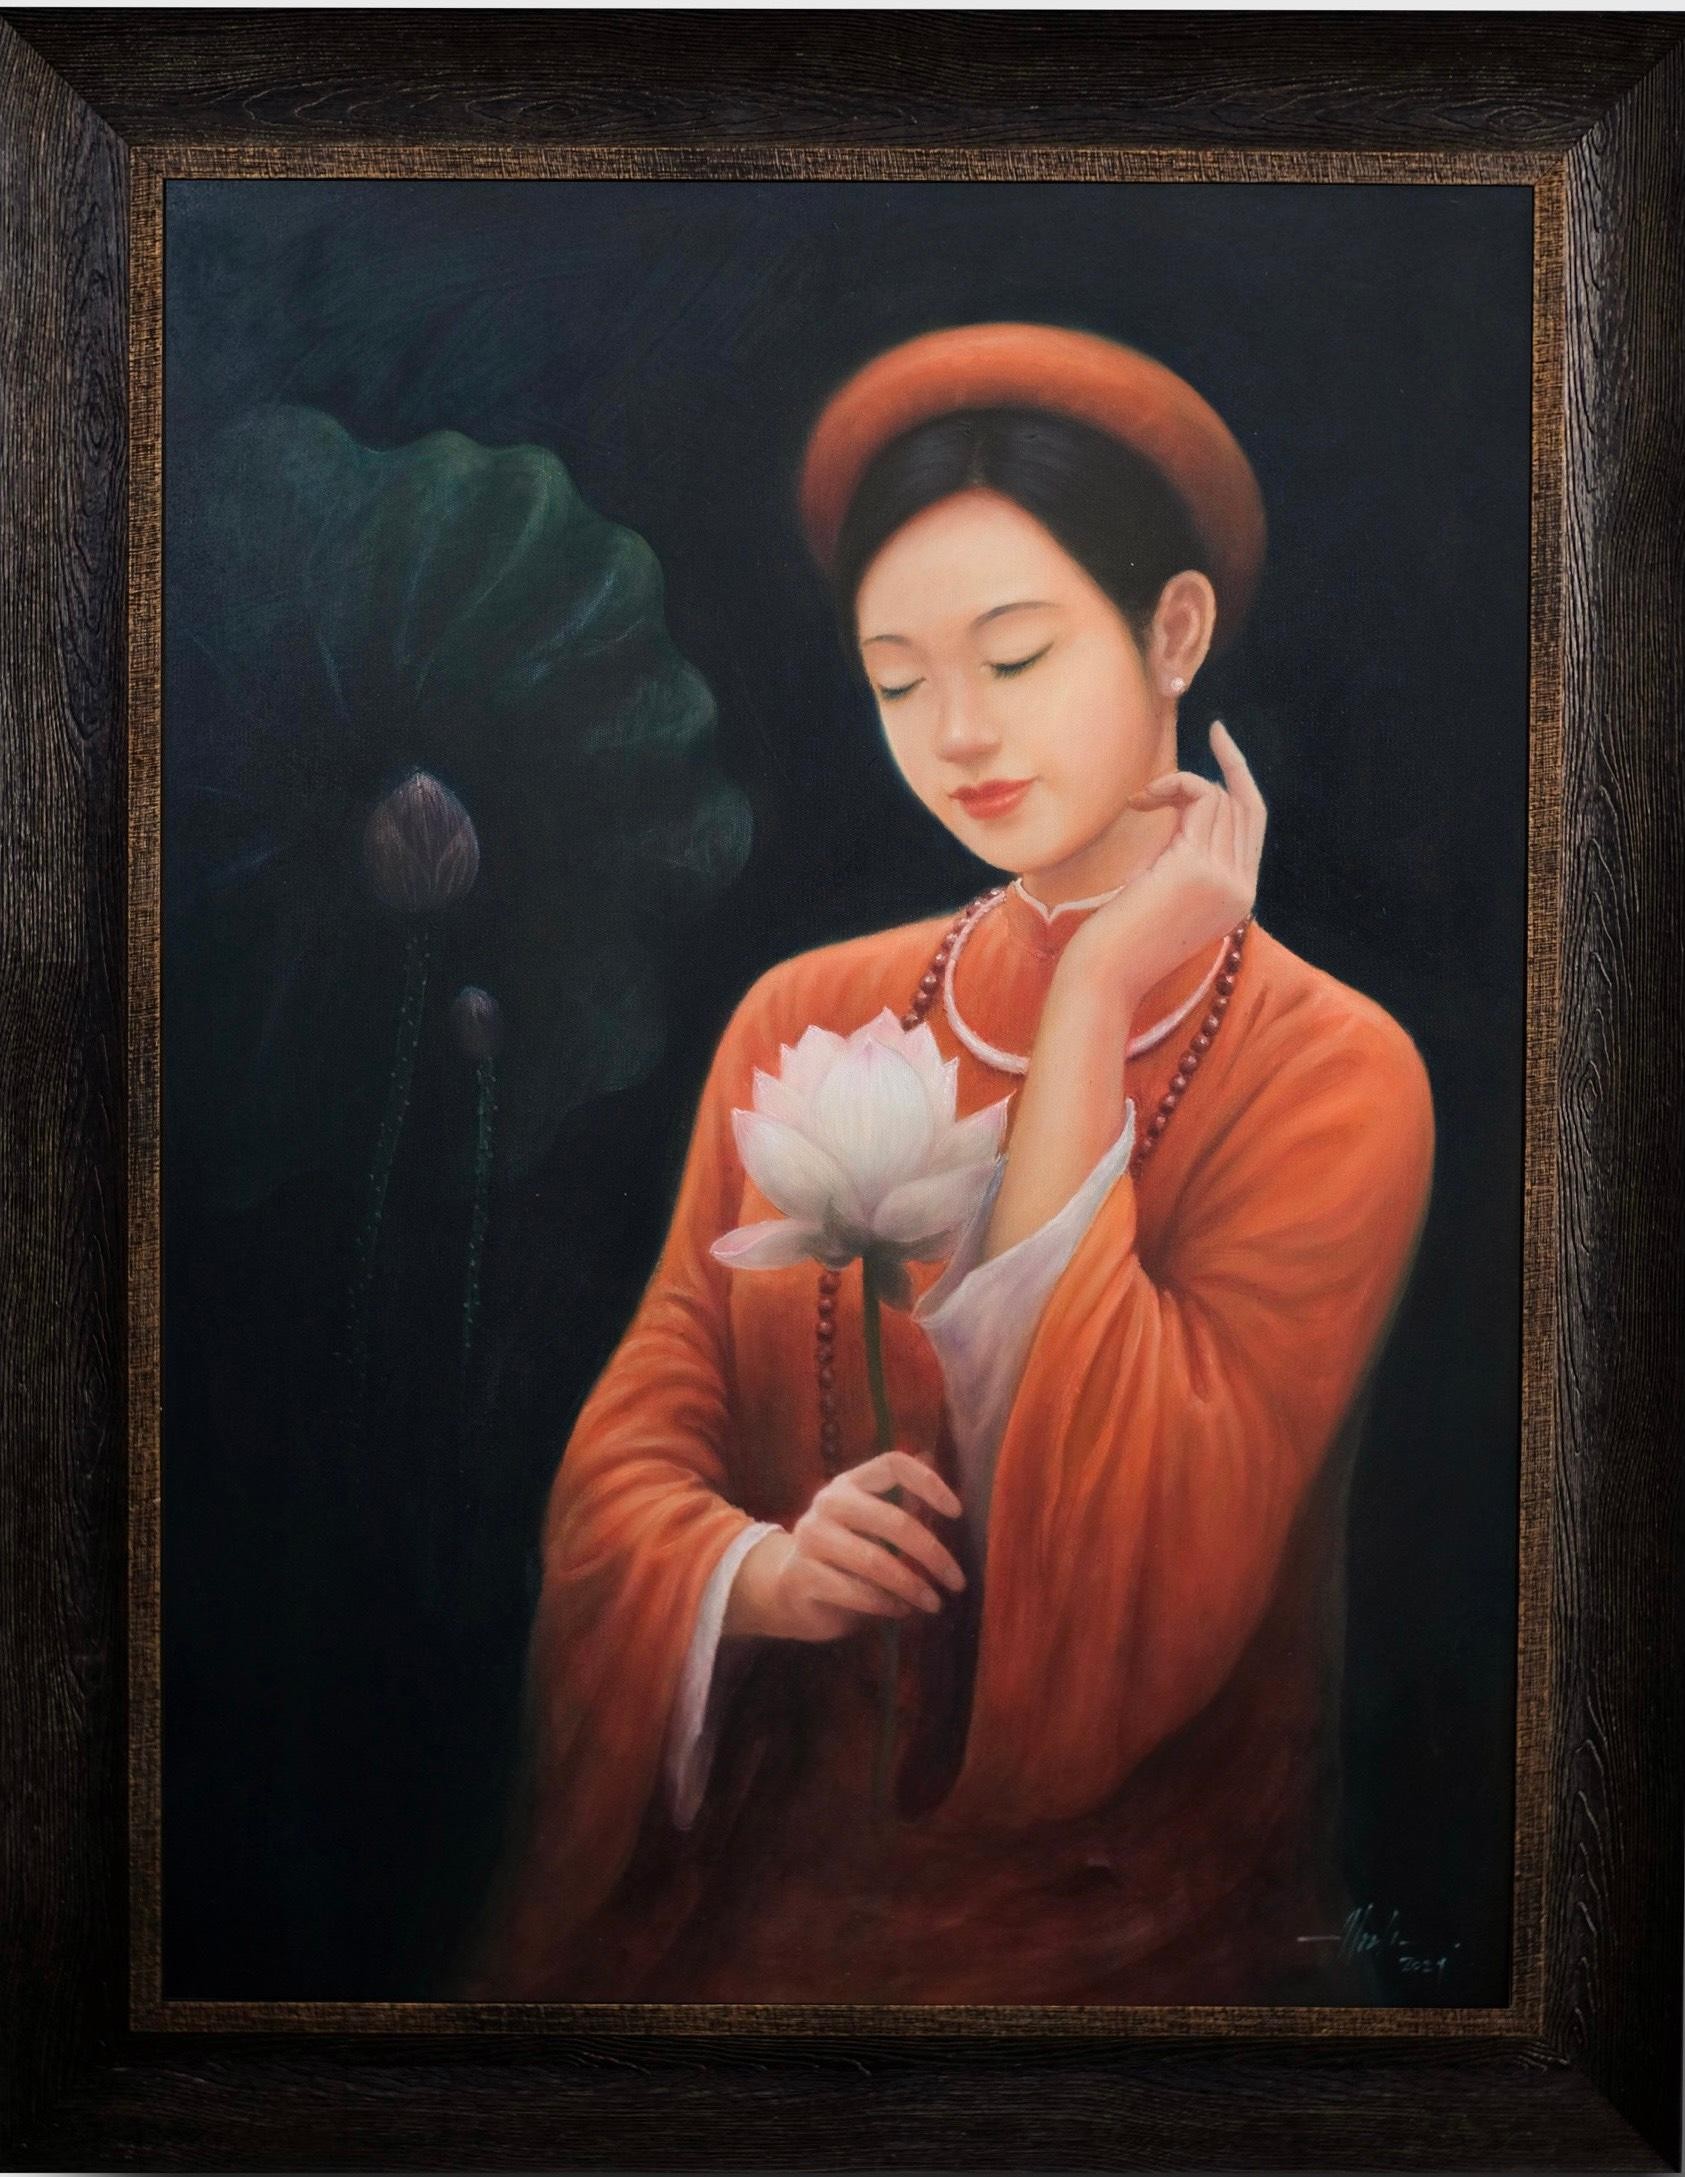 Bộ tranh thiếu nữ và hoa sen làm mê đắm lòng người của chàng họa sĩ Bắc Giang ảnh 8